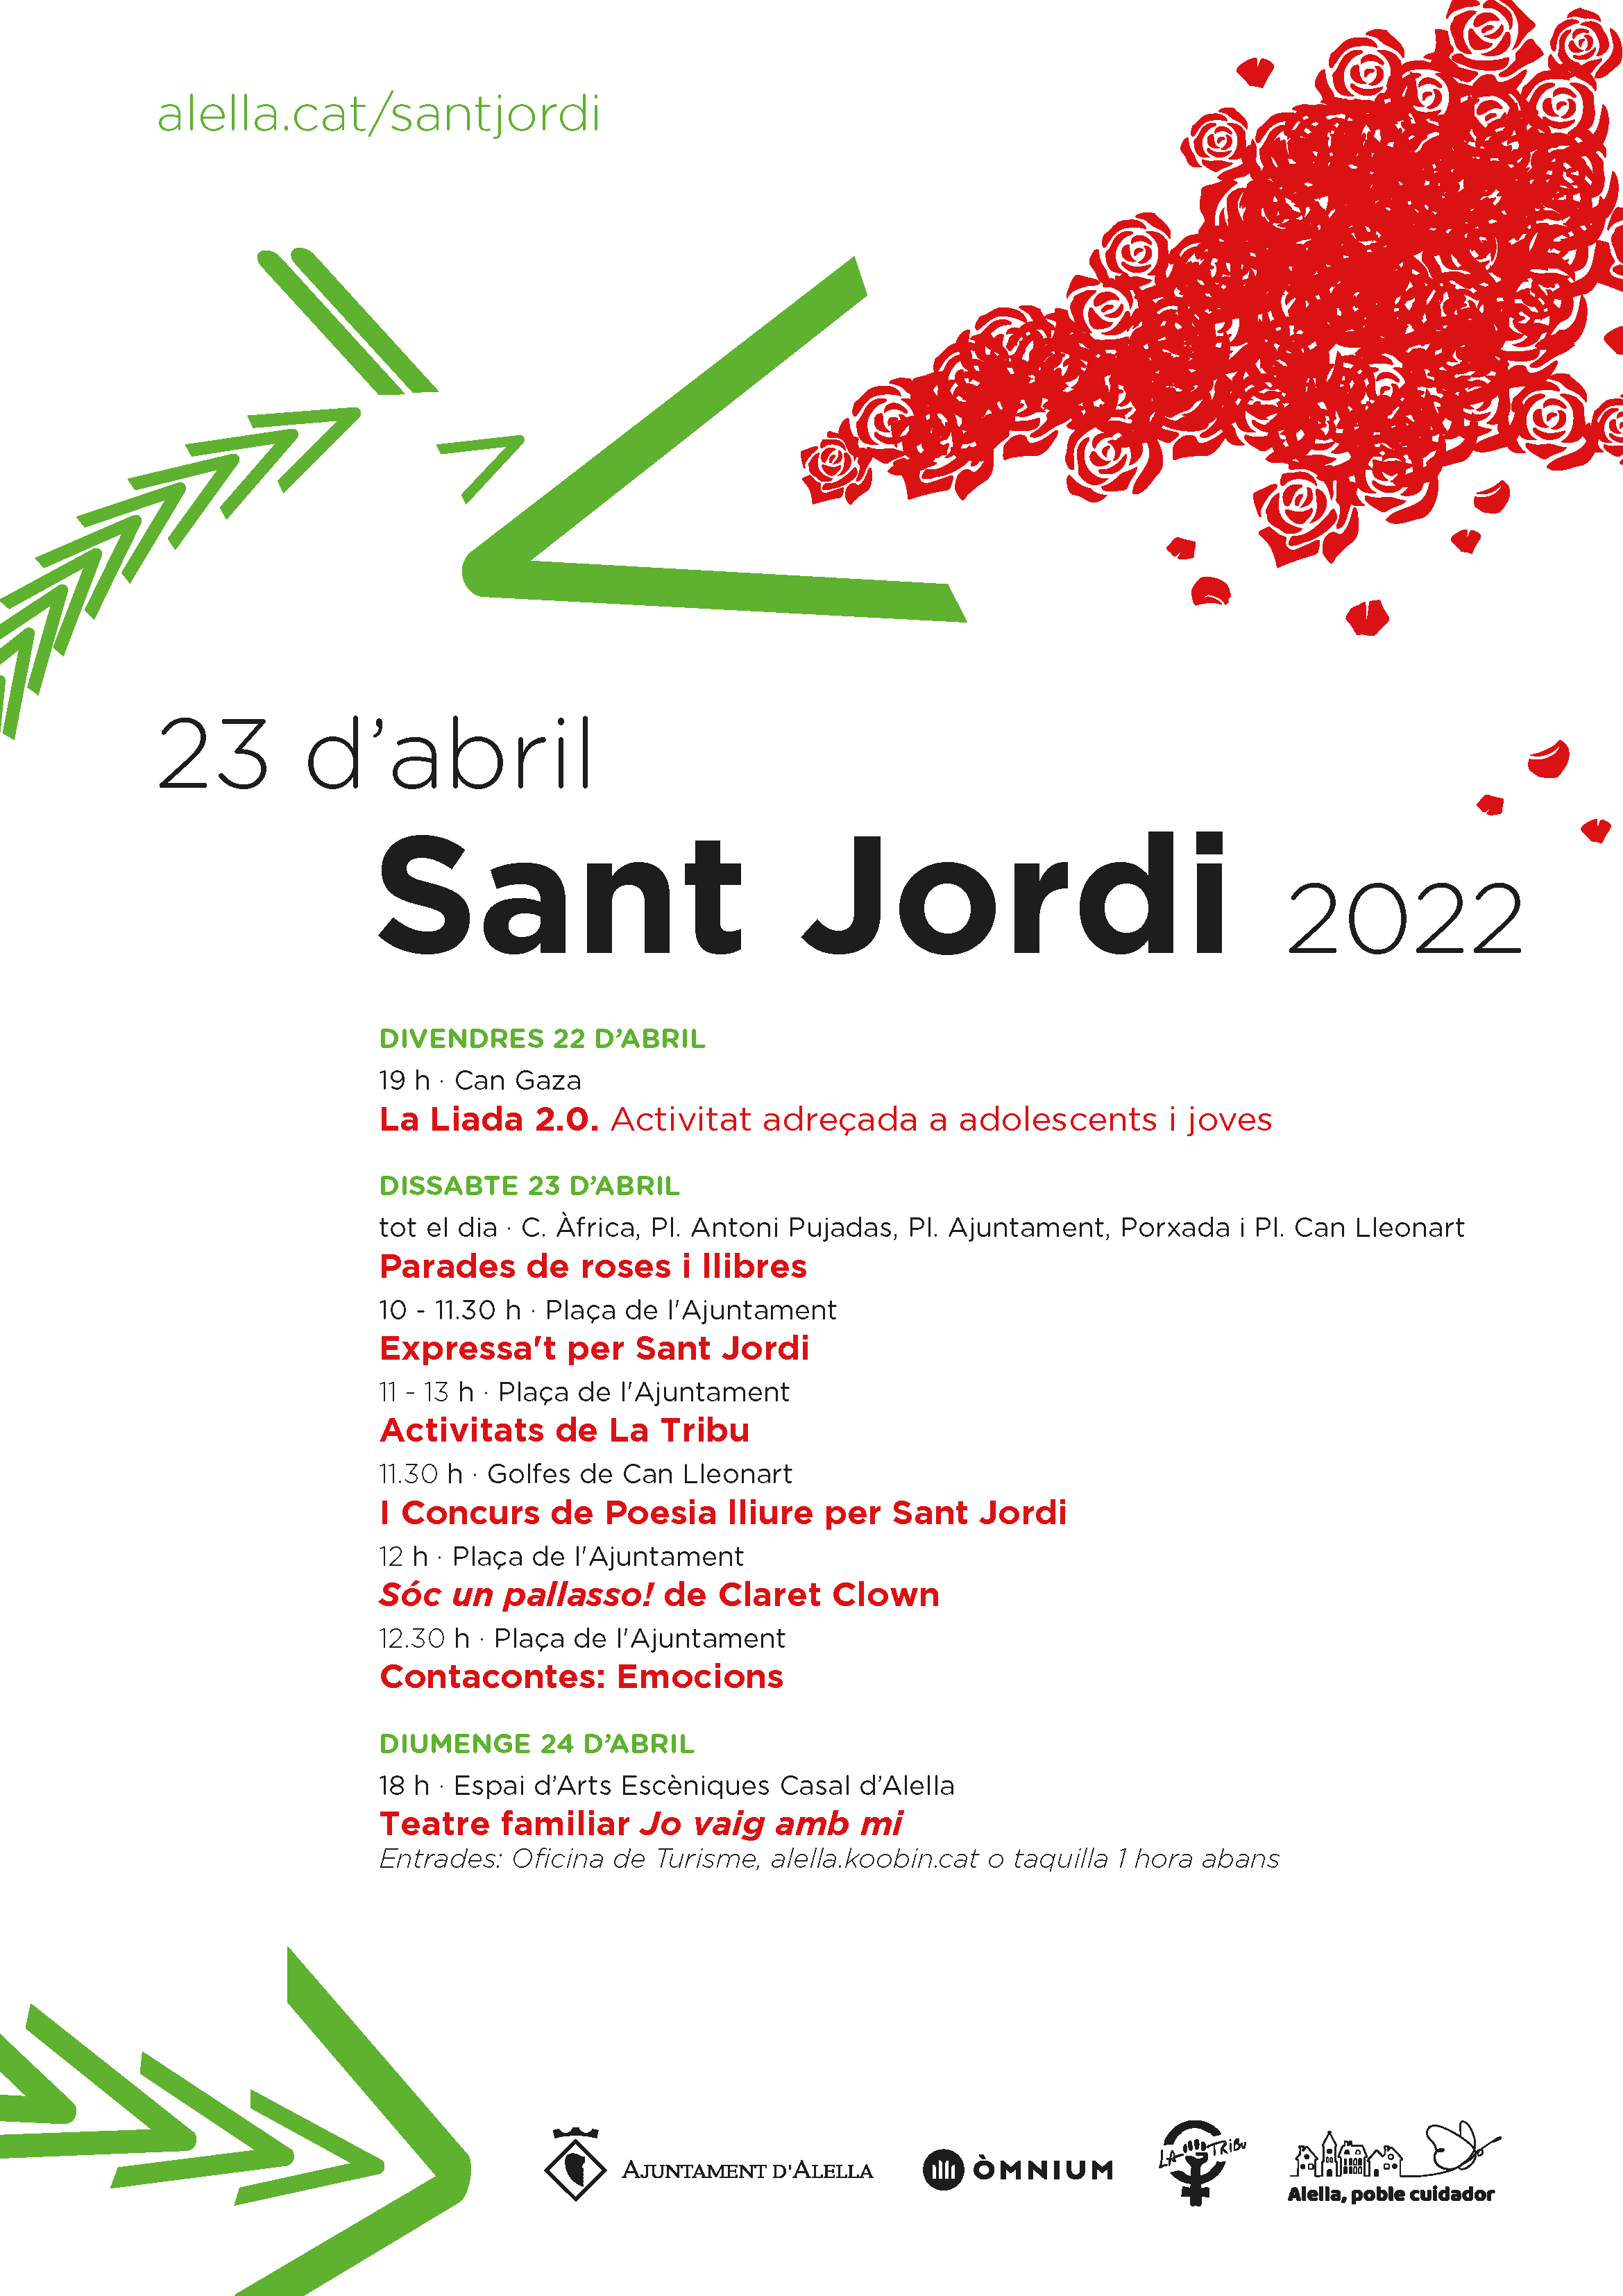 Més activitats per a la celebració de Sant Jordi